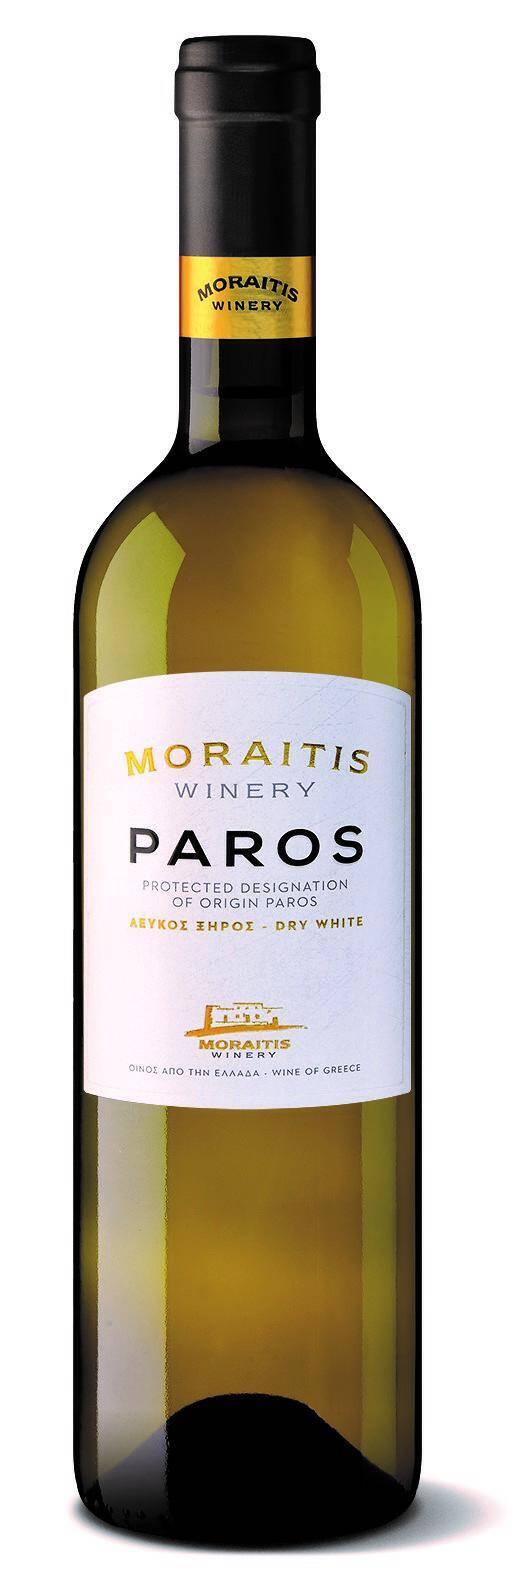 Moraitis White, PDO Paros BW GRE (Zdjęcie 1)